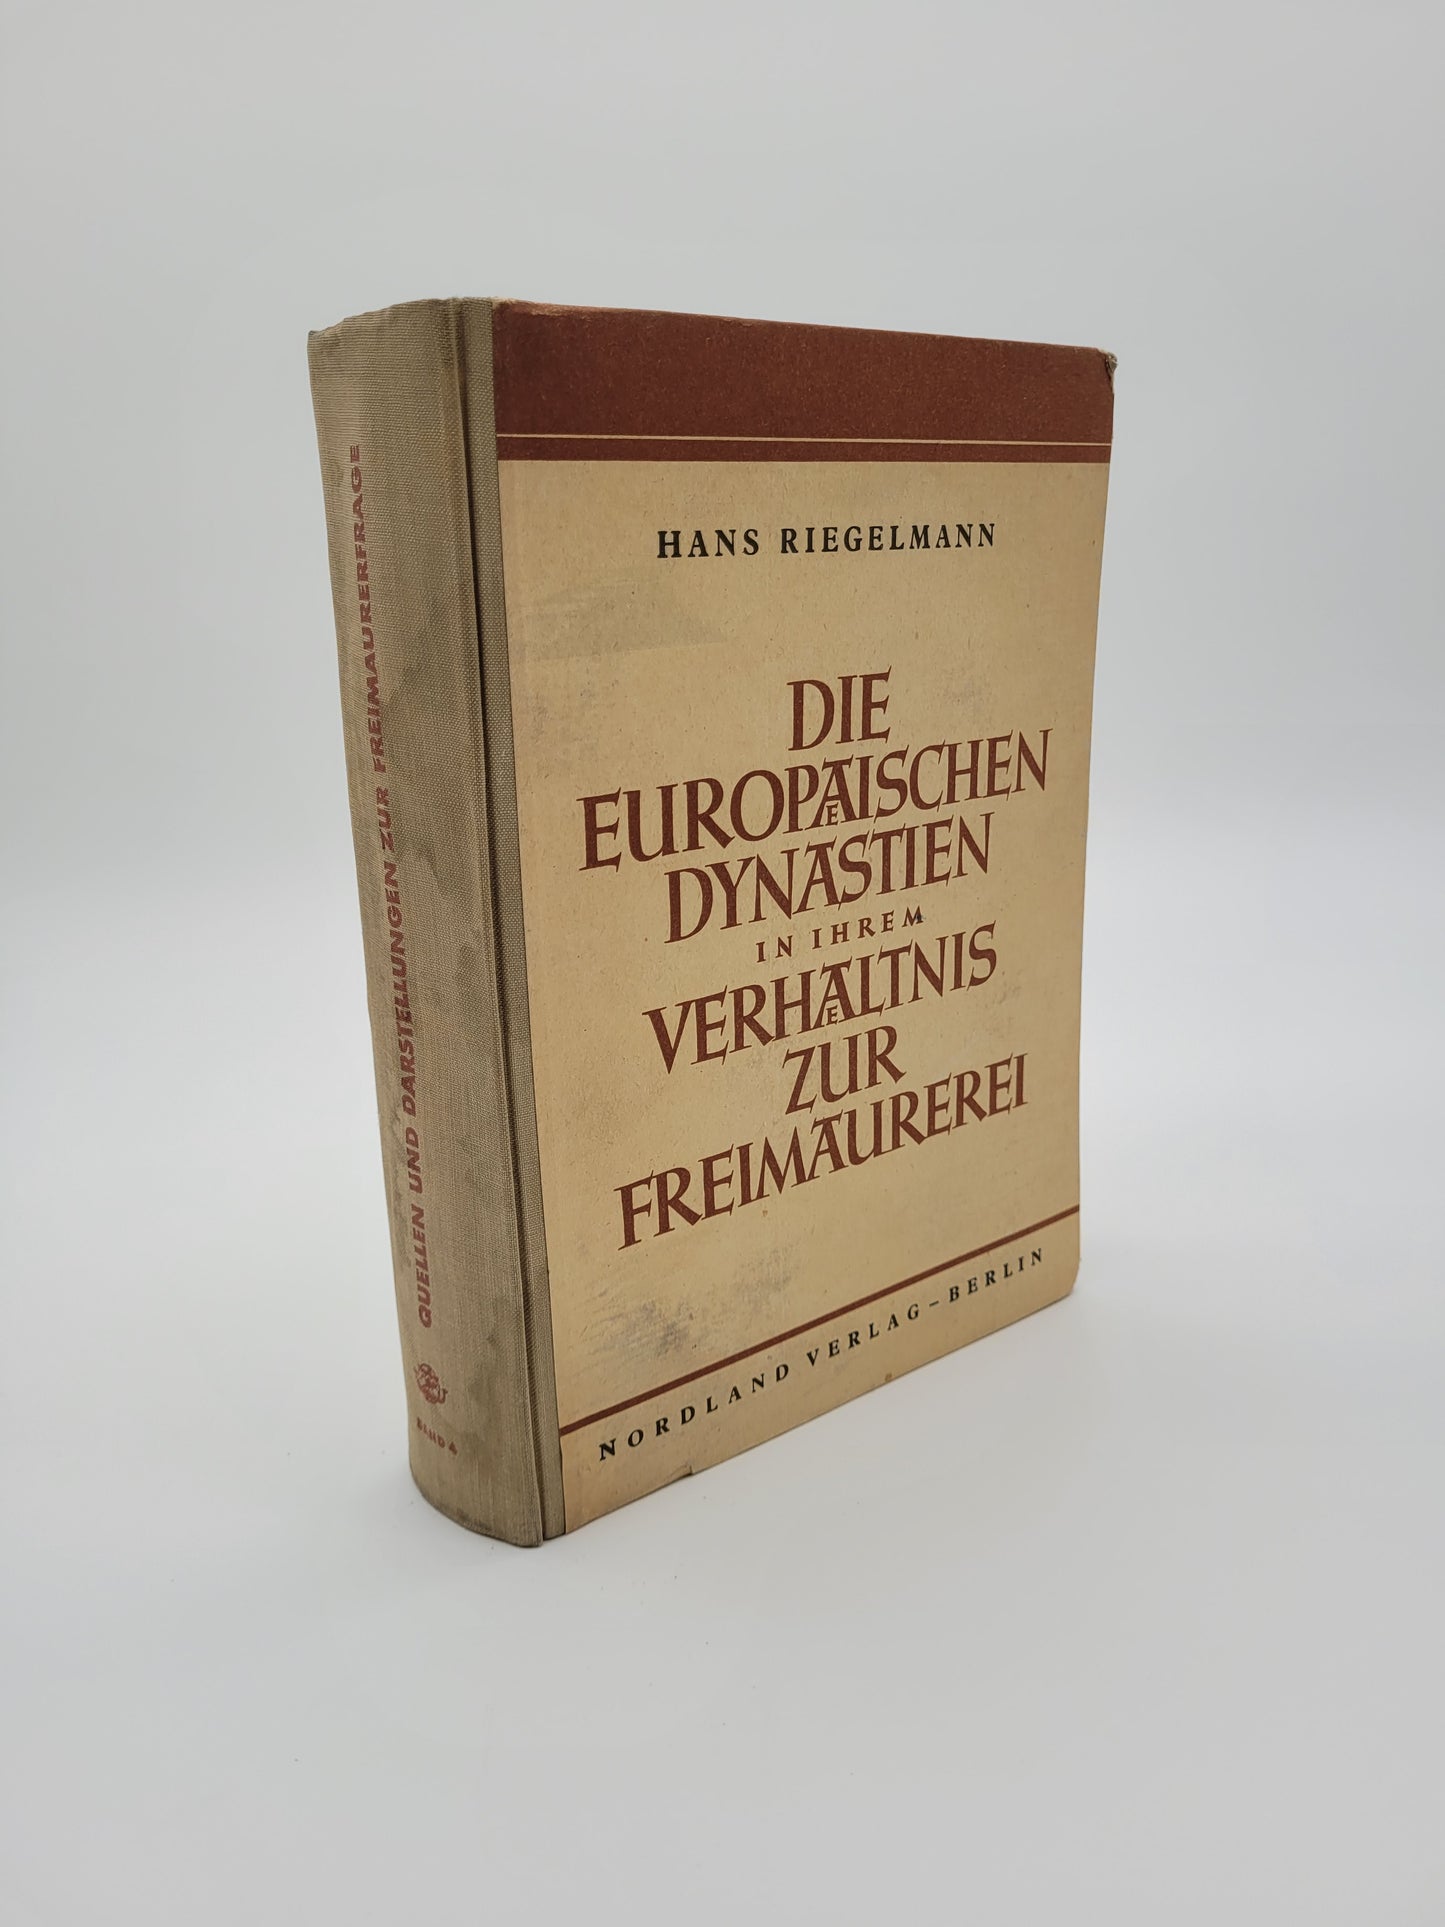 Die Europäischen Dynastien in ihrem Verhältnis zur Freimaurerei (Nordland Verlag) LESEEXEMPLAR